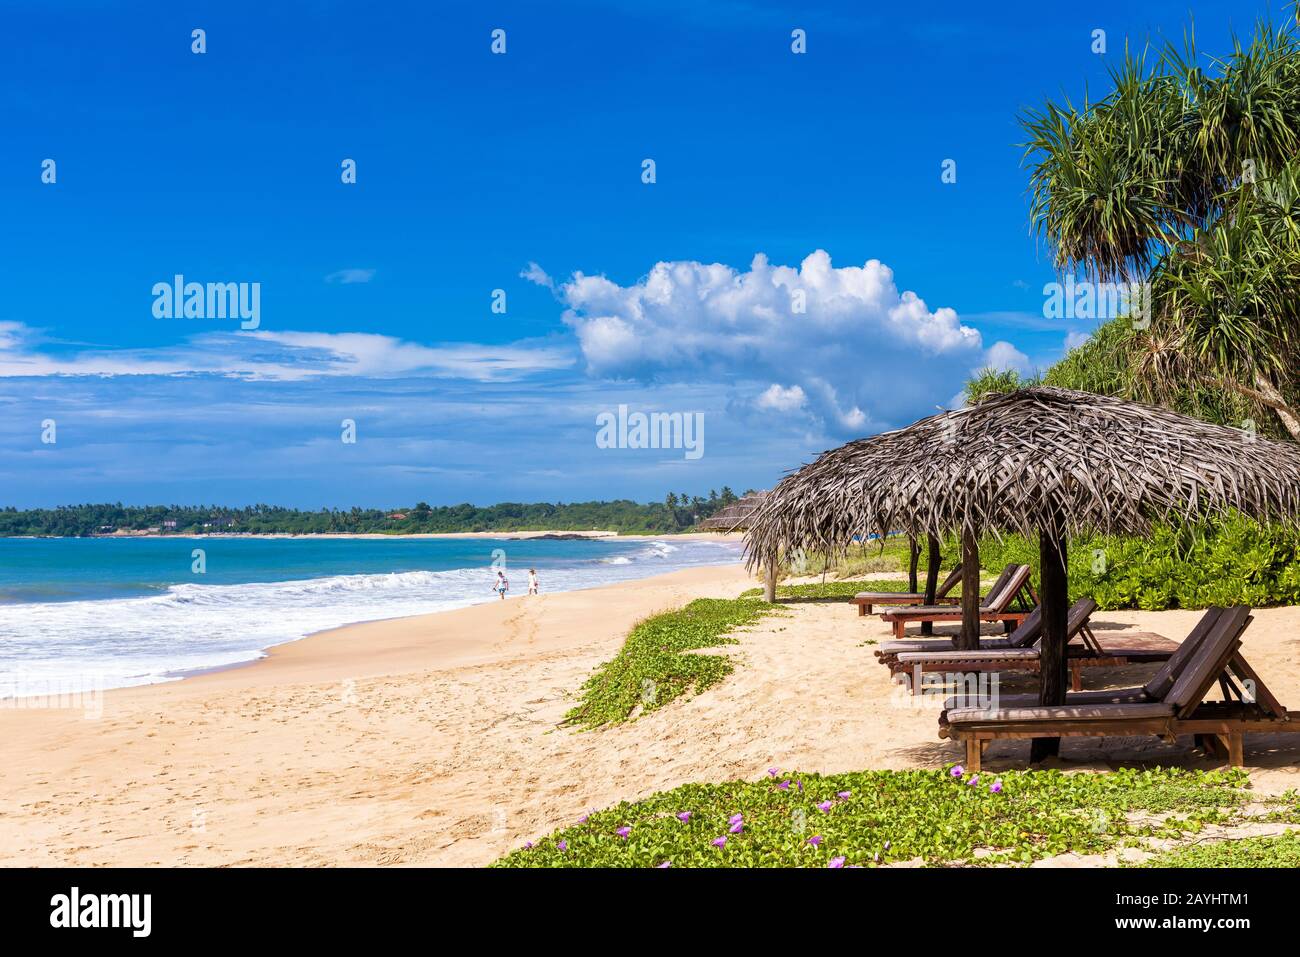 Lits de plage avec parasols sur la plage tropicale Banque D'Images